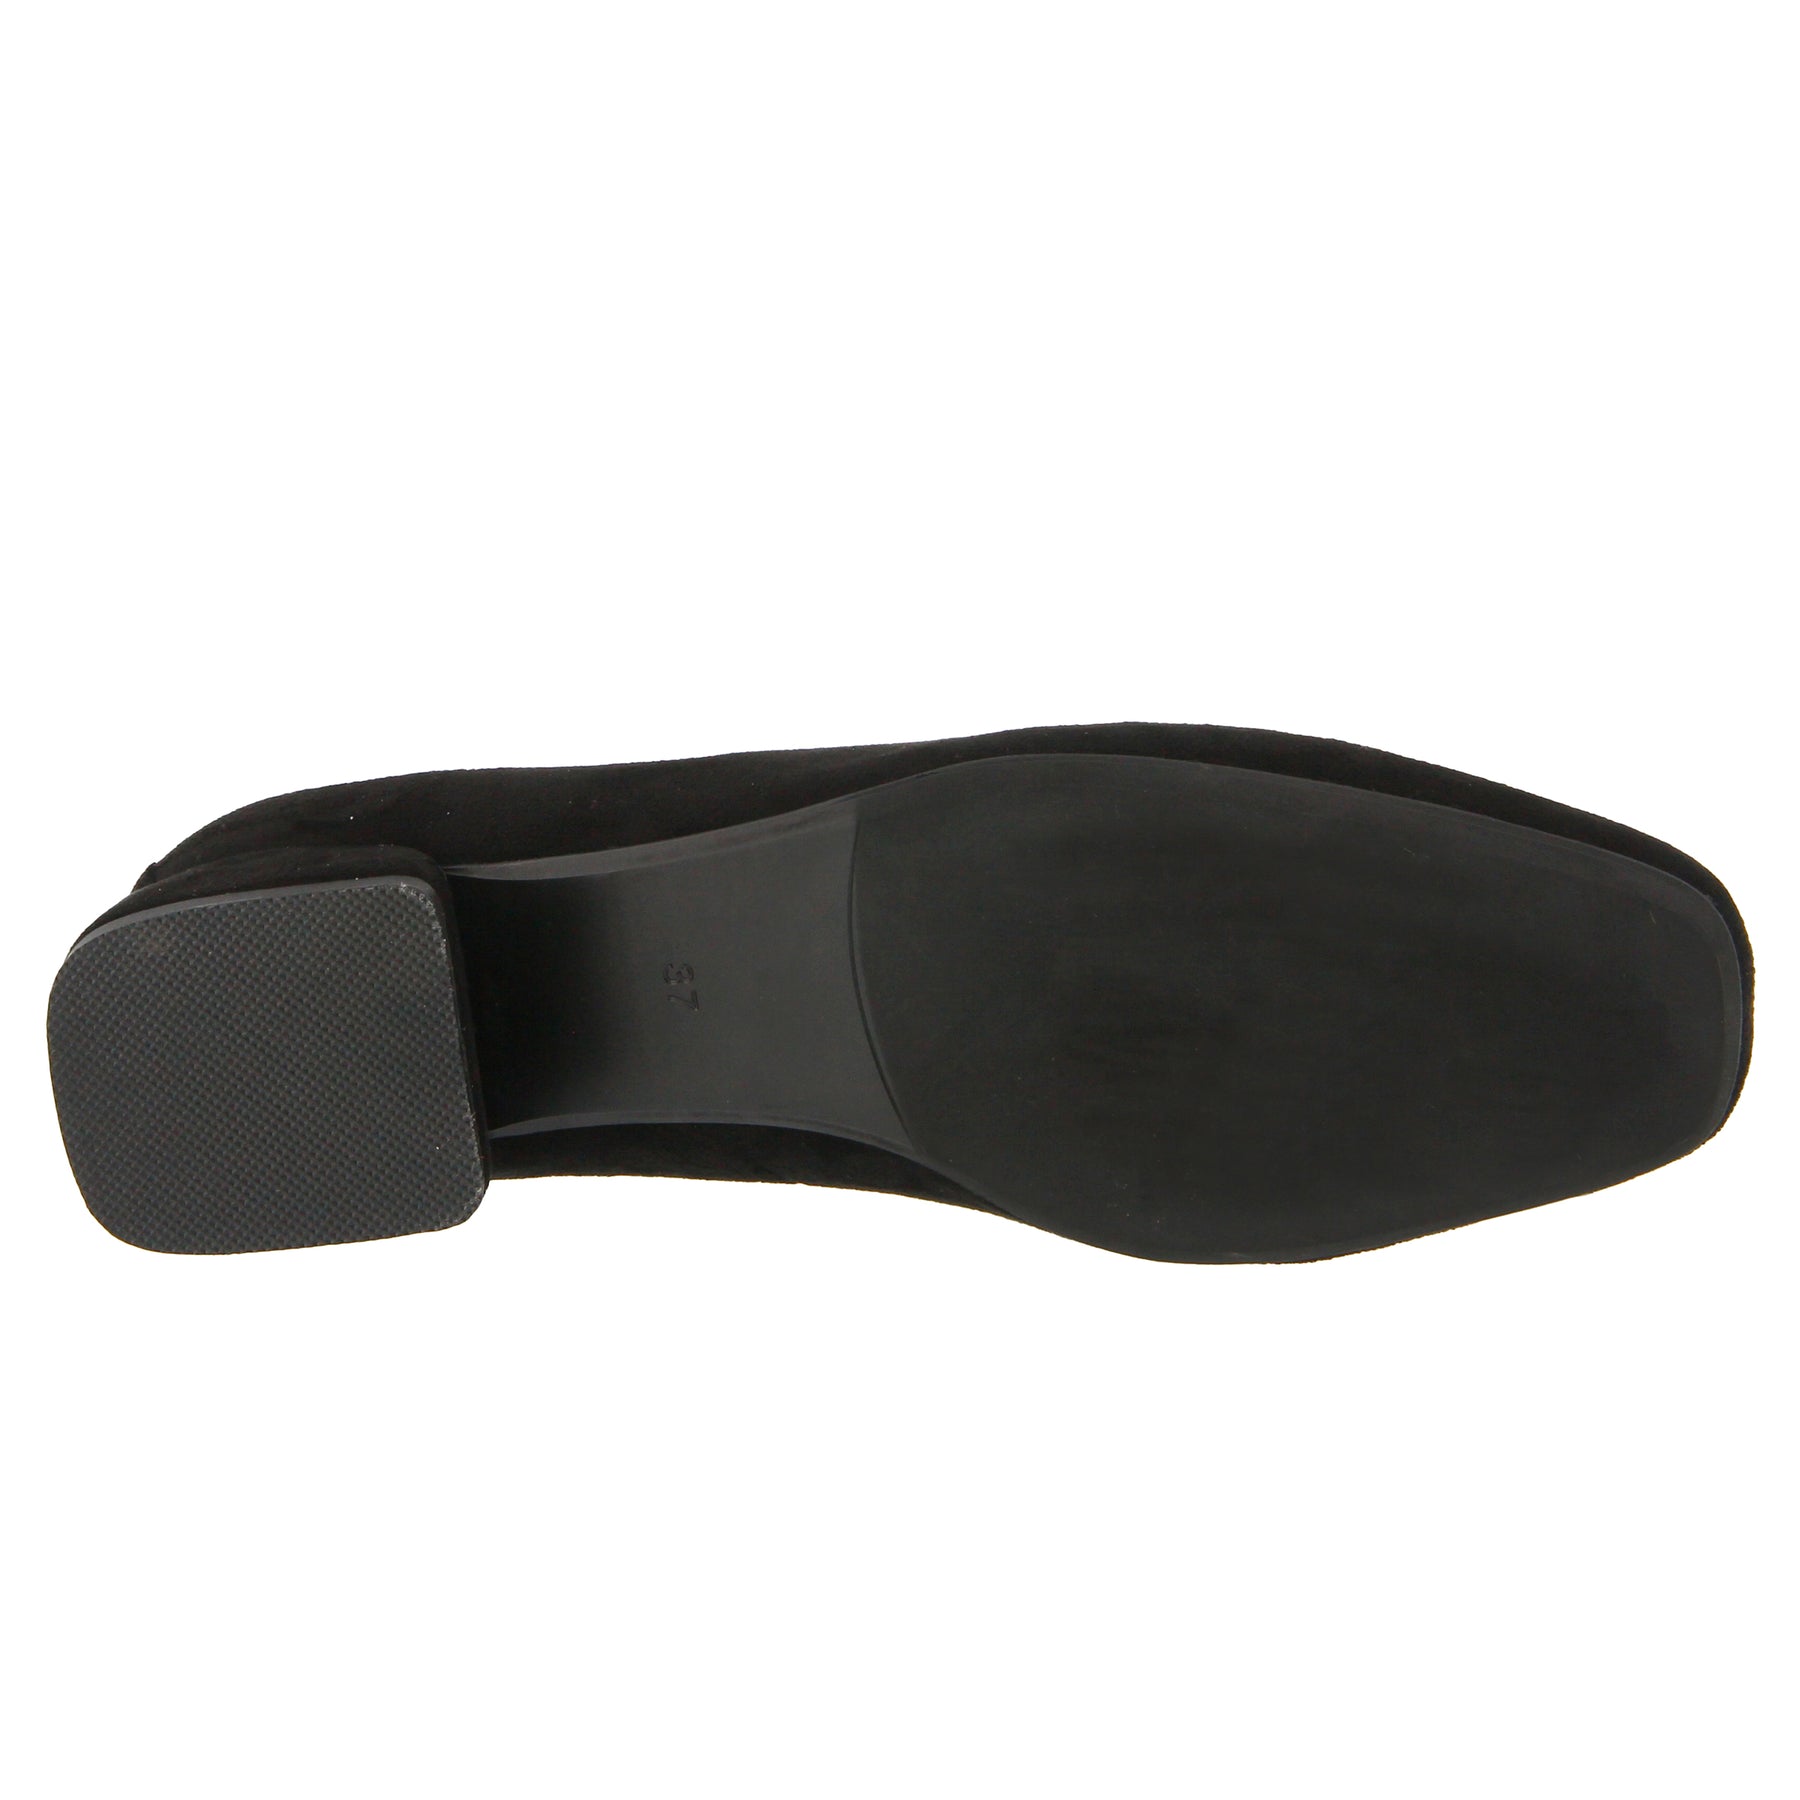 Azura Fleurde Shoes: Black Slip on Shoes – Spring Step Shoes